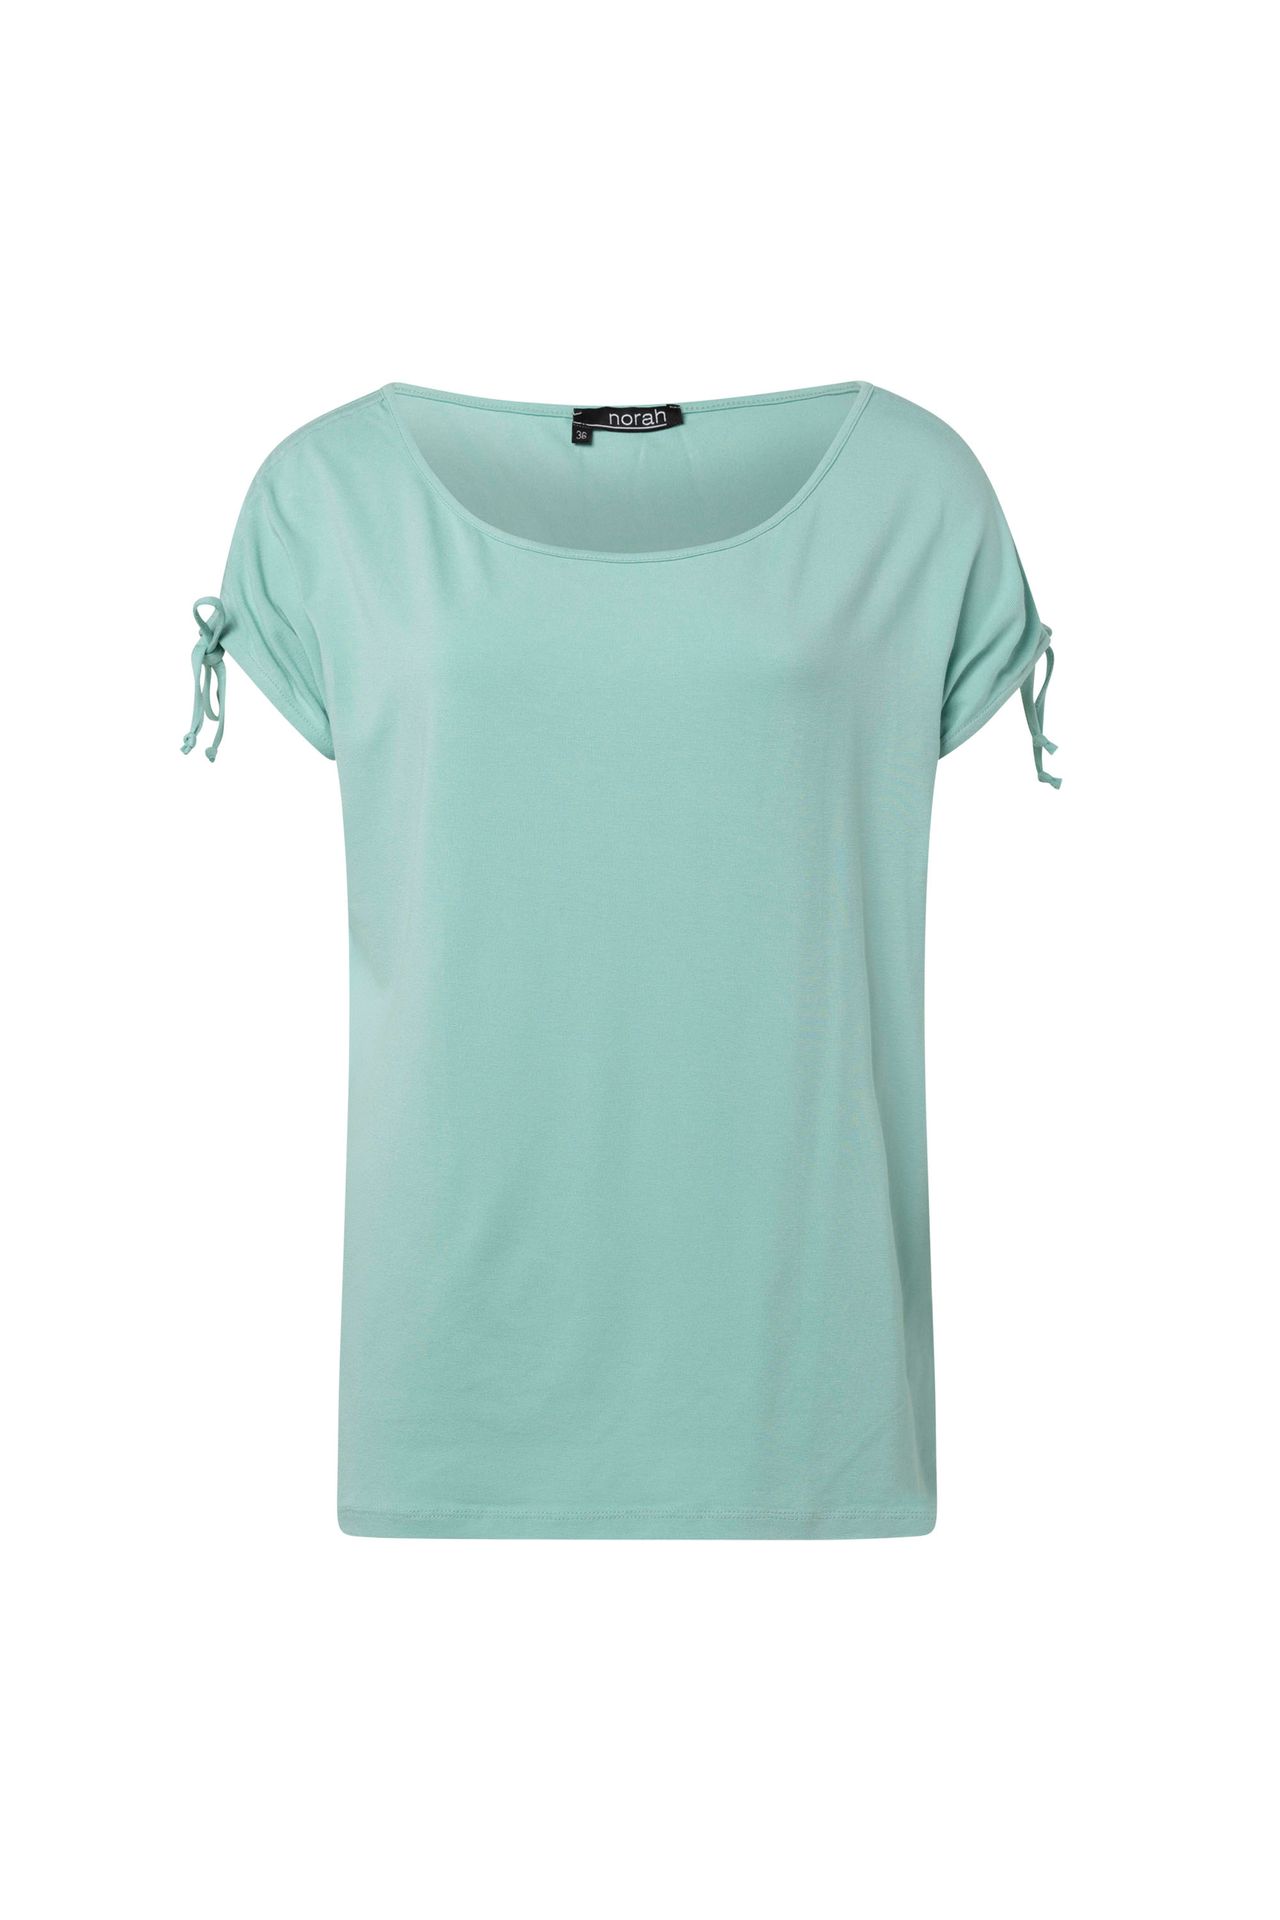 Norah Shirt met koordjes pastel green 209997-512